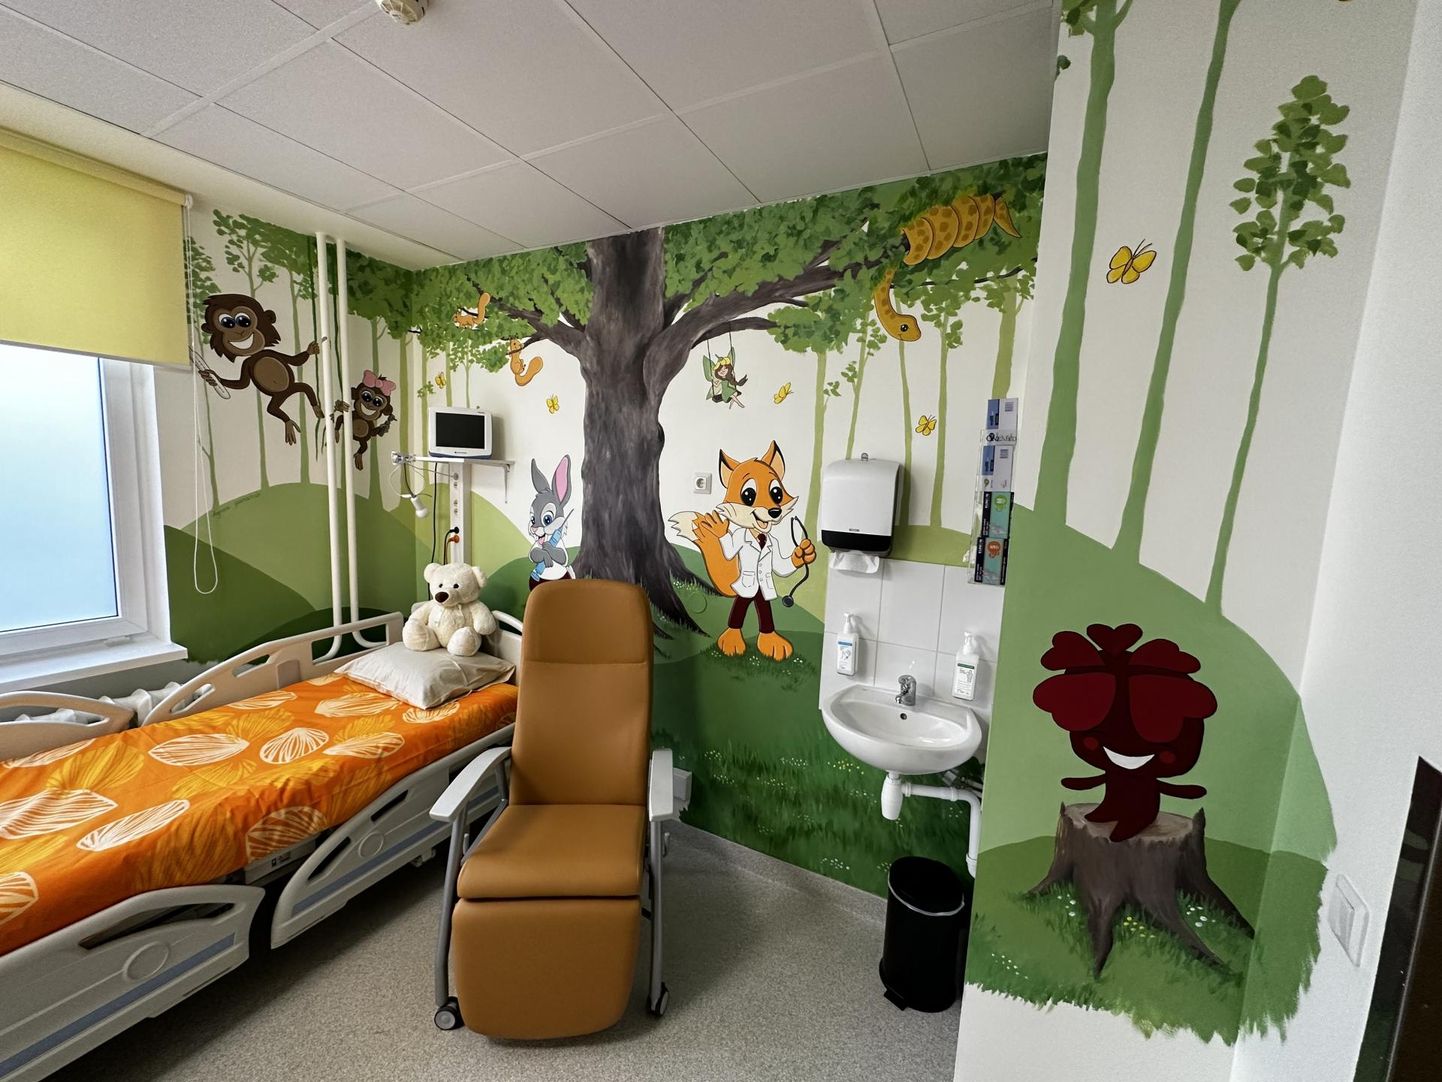 Uuenenud Viljandi haigla erakorralise meditsiini osakonna lastetuba mööbel ja aparatuur sai uuendust ning selle seinu katavad maalingud.